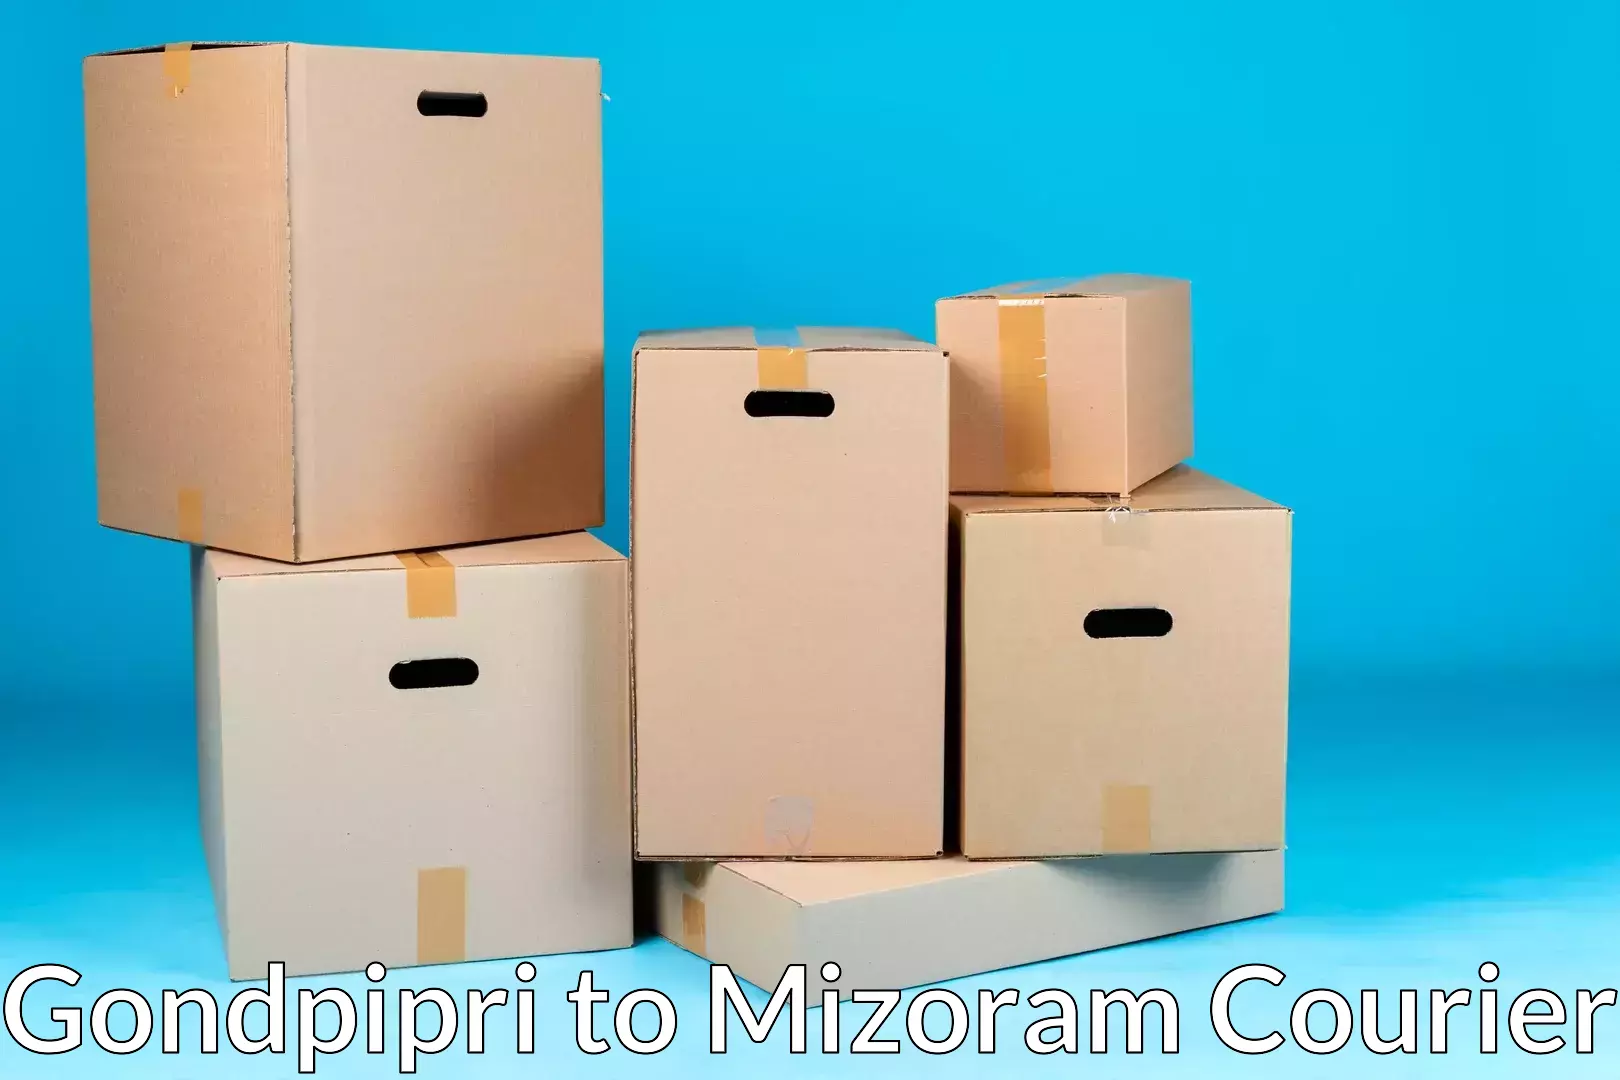 Advanced relocation solutions Gondpipri to Mizoram